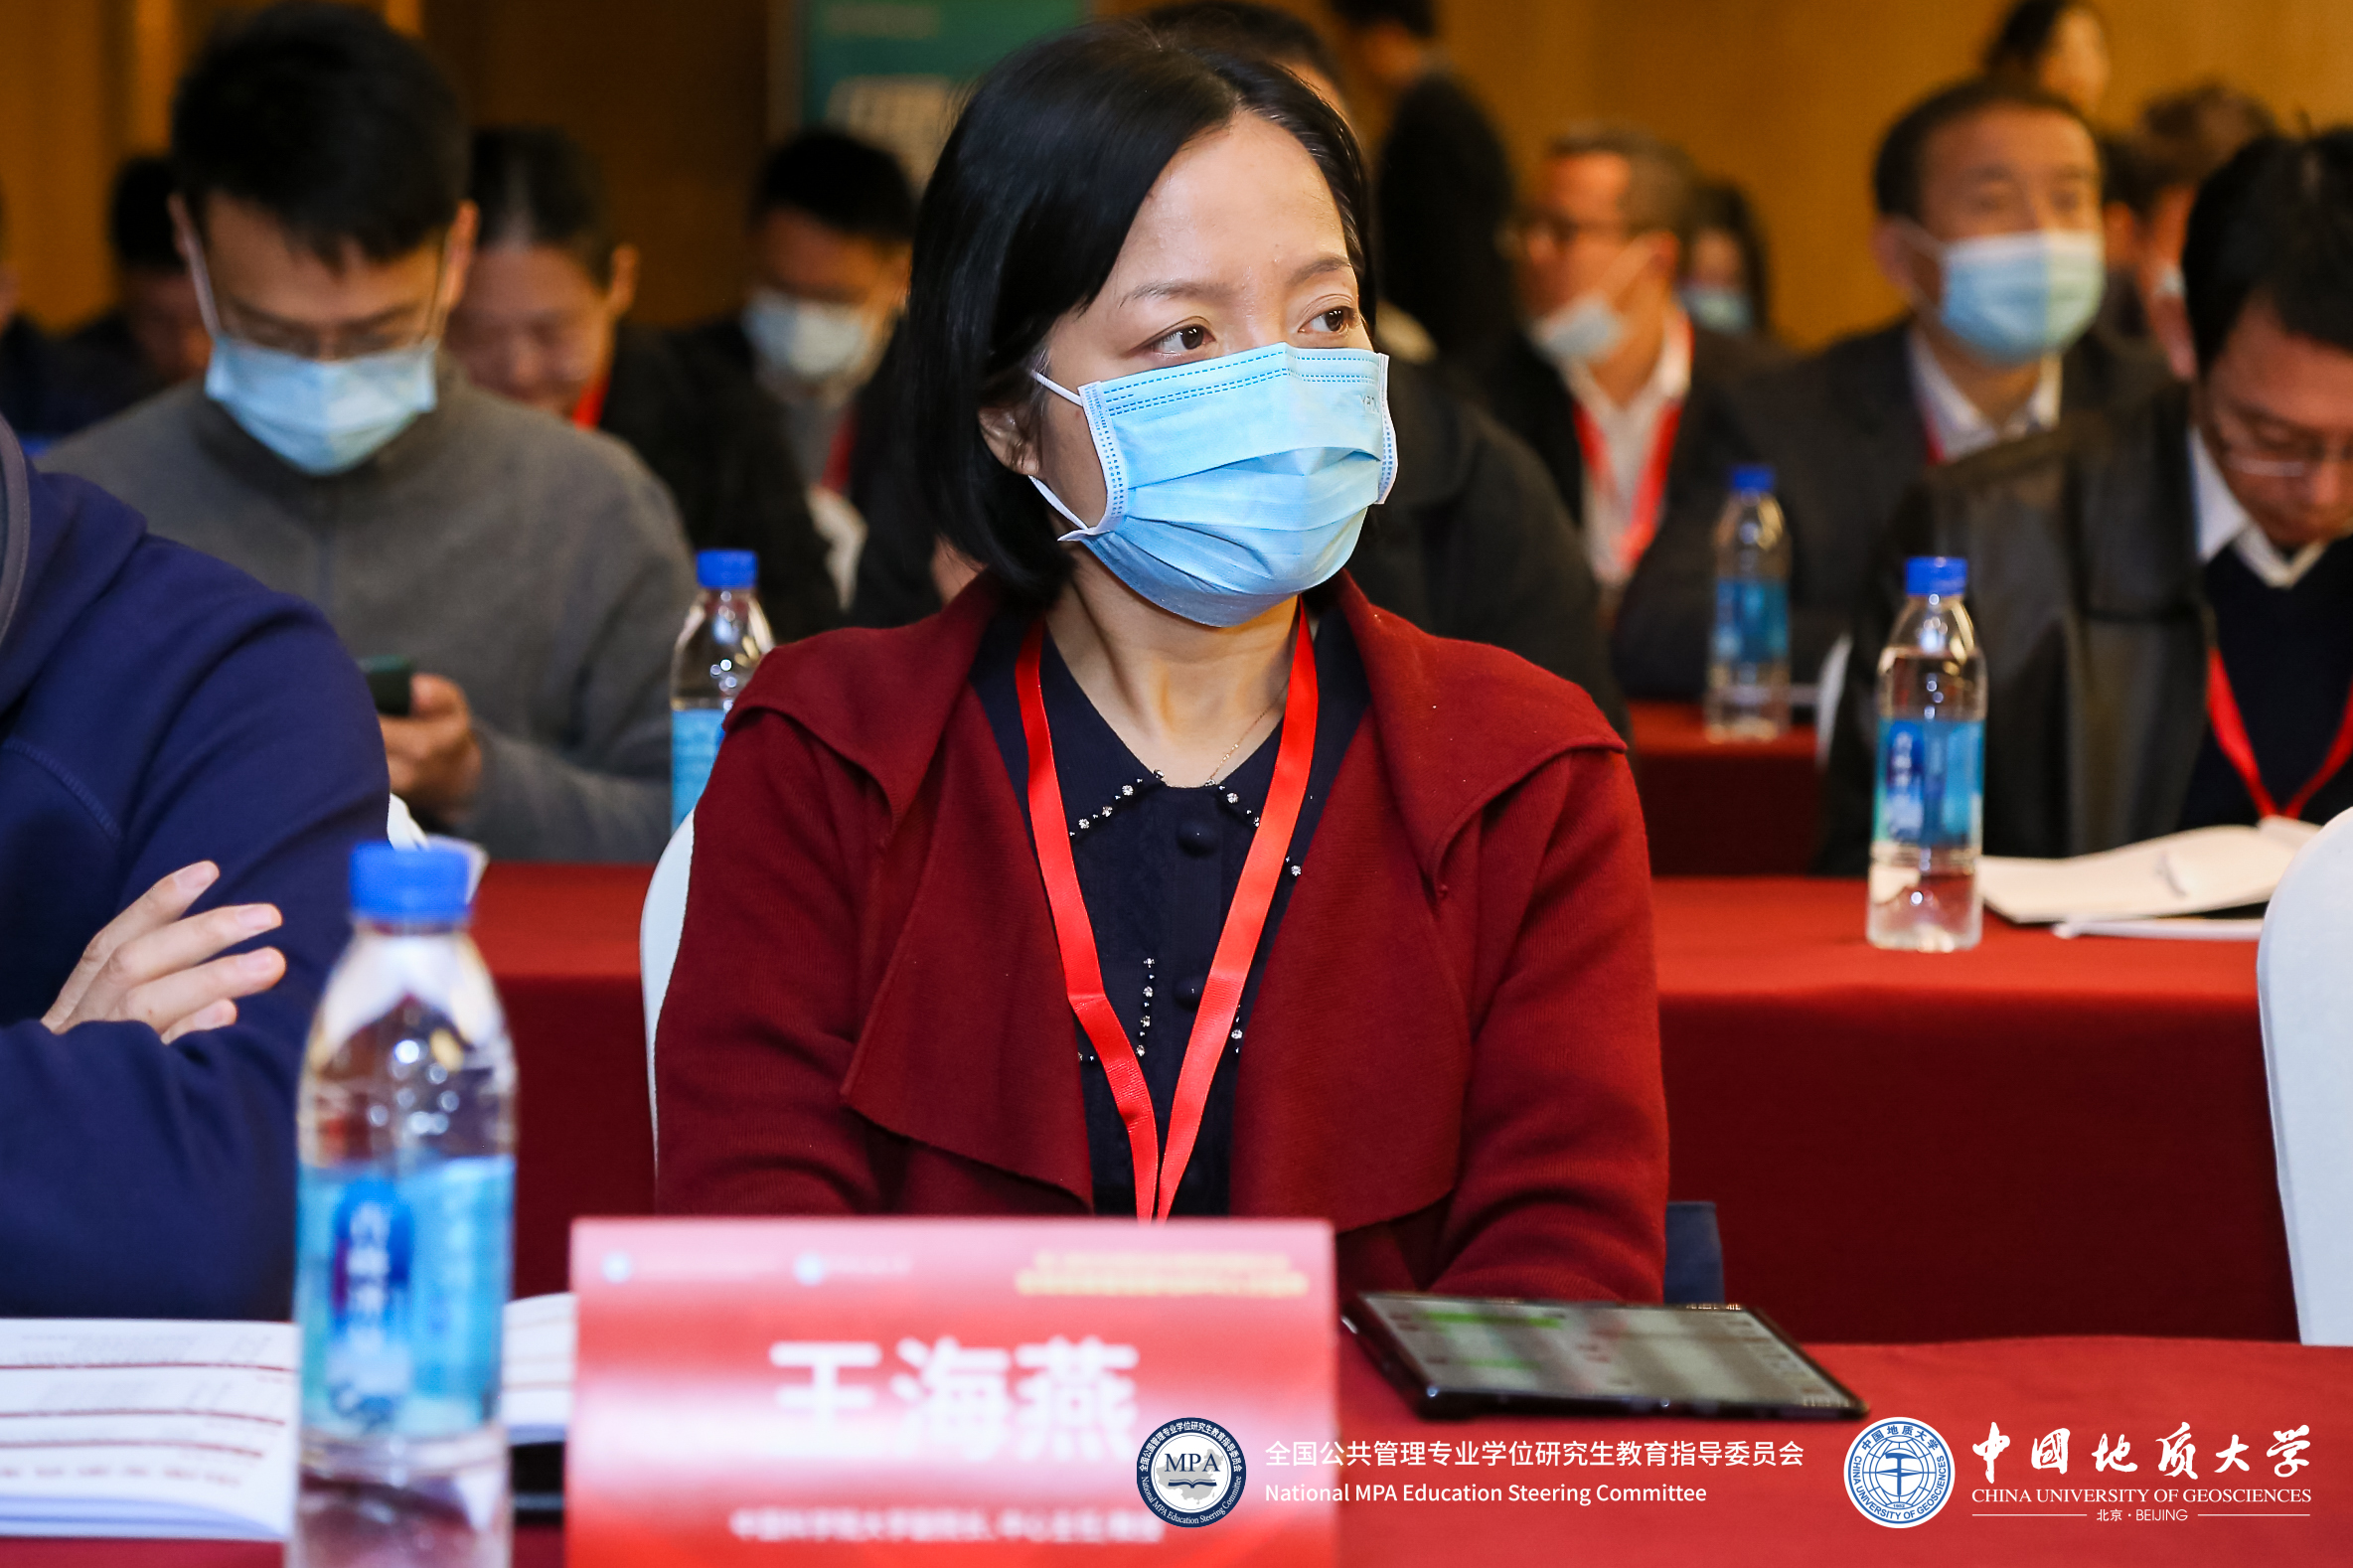 中国科学院大学公共政策与管理学院副院长王海燕一行出席第八届华北地区MPA教育发展研讨会